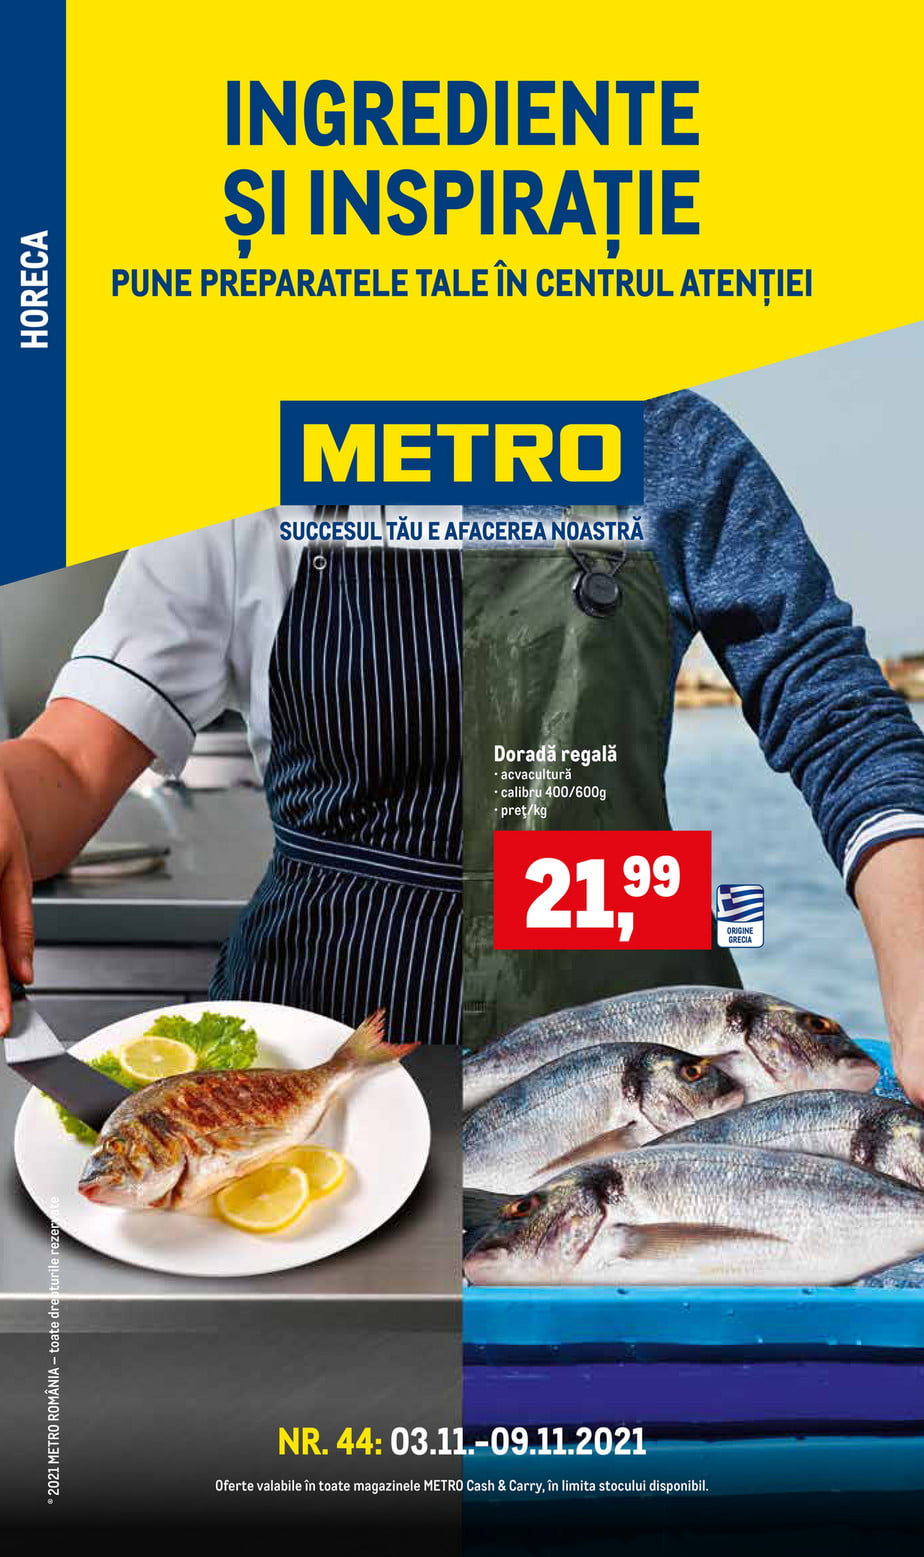 Catalog Metro 3 noiembrie - 9 noiembrie 2021 Ingrediente si inspiratie - Produse proaspete pentru HoReCa